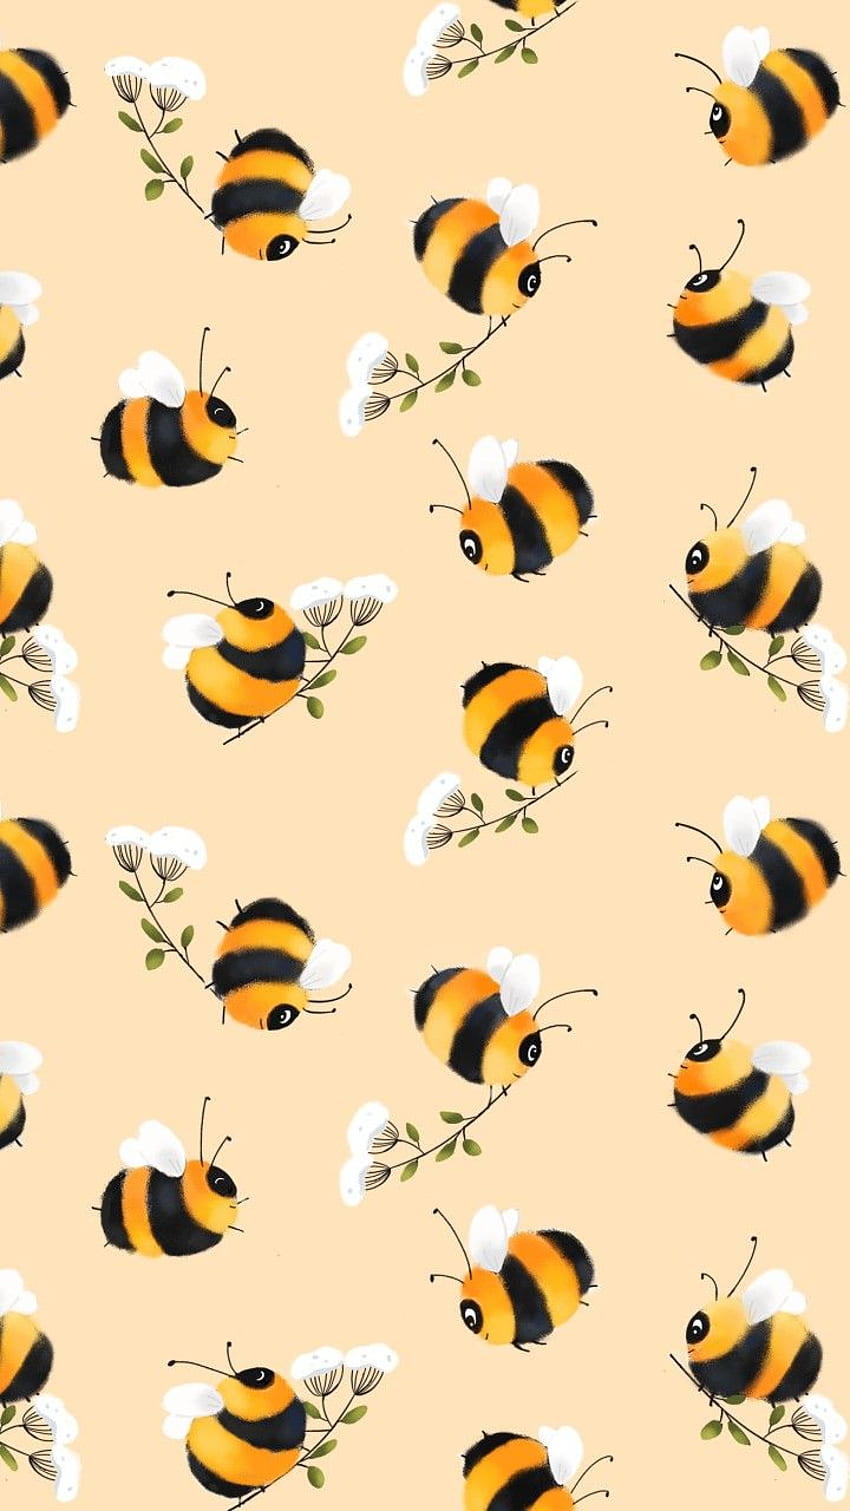 Telepon Lebah Madu, Selamatkan Lebah wallpaper ponsel HD